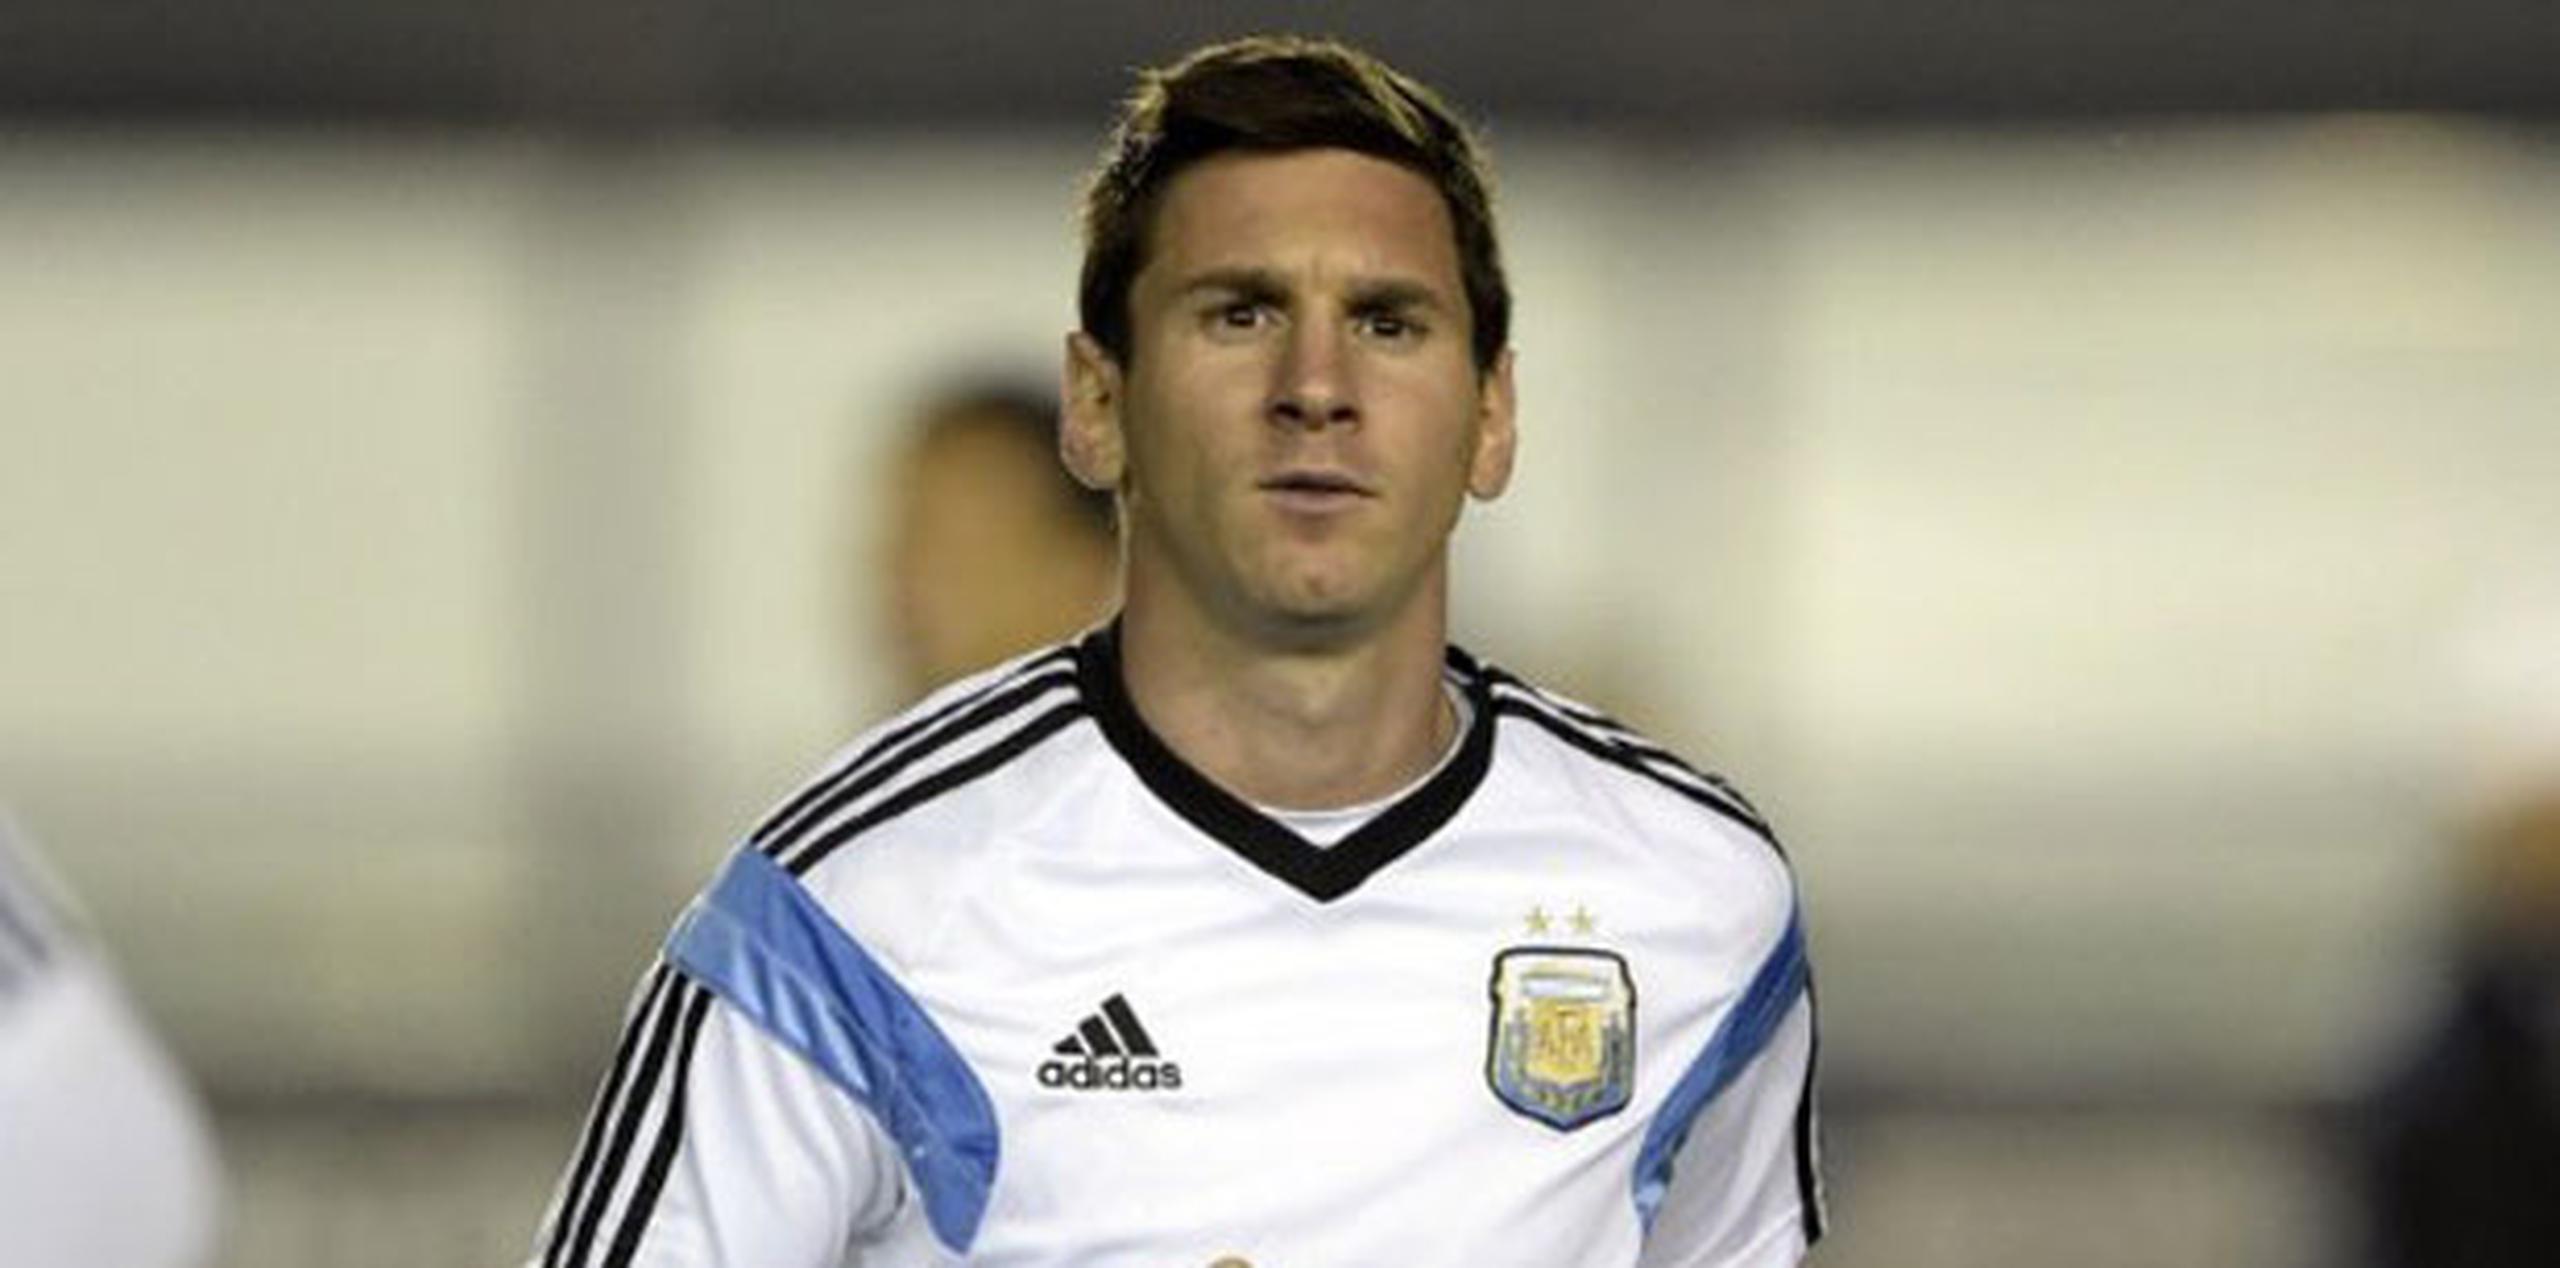 "Mañana jugaremos el partido más importante de nuestras vidas con esta camiseta", agregó. (AFP)